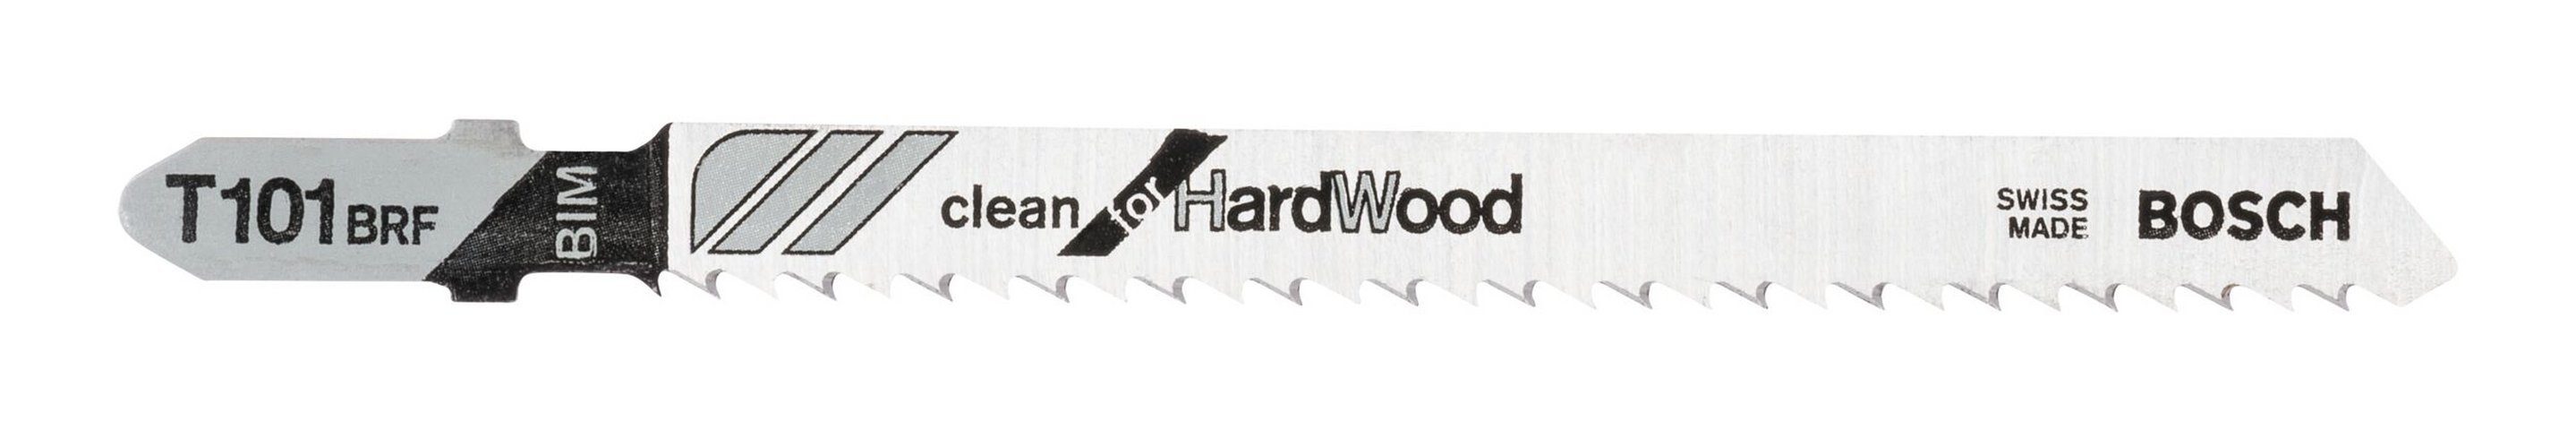 BOSCH Stichsägeblatt (25 Stück), T BRF for 101 25er-Pack Hard Wood - Clean